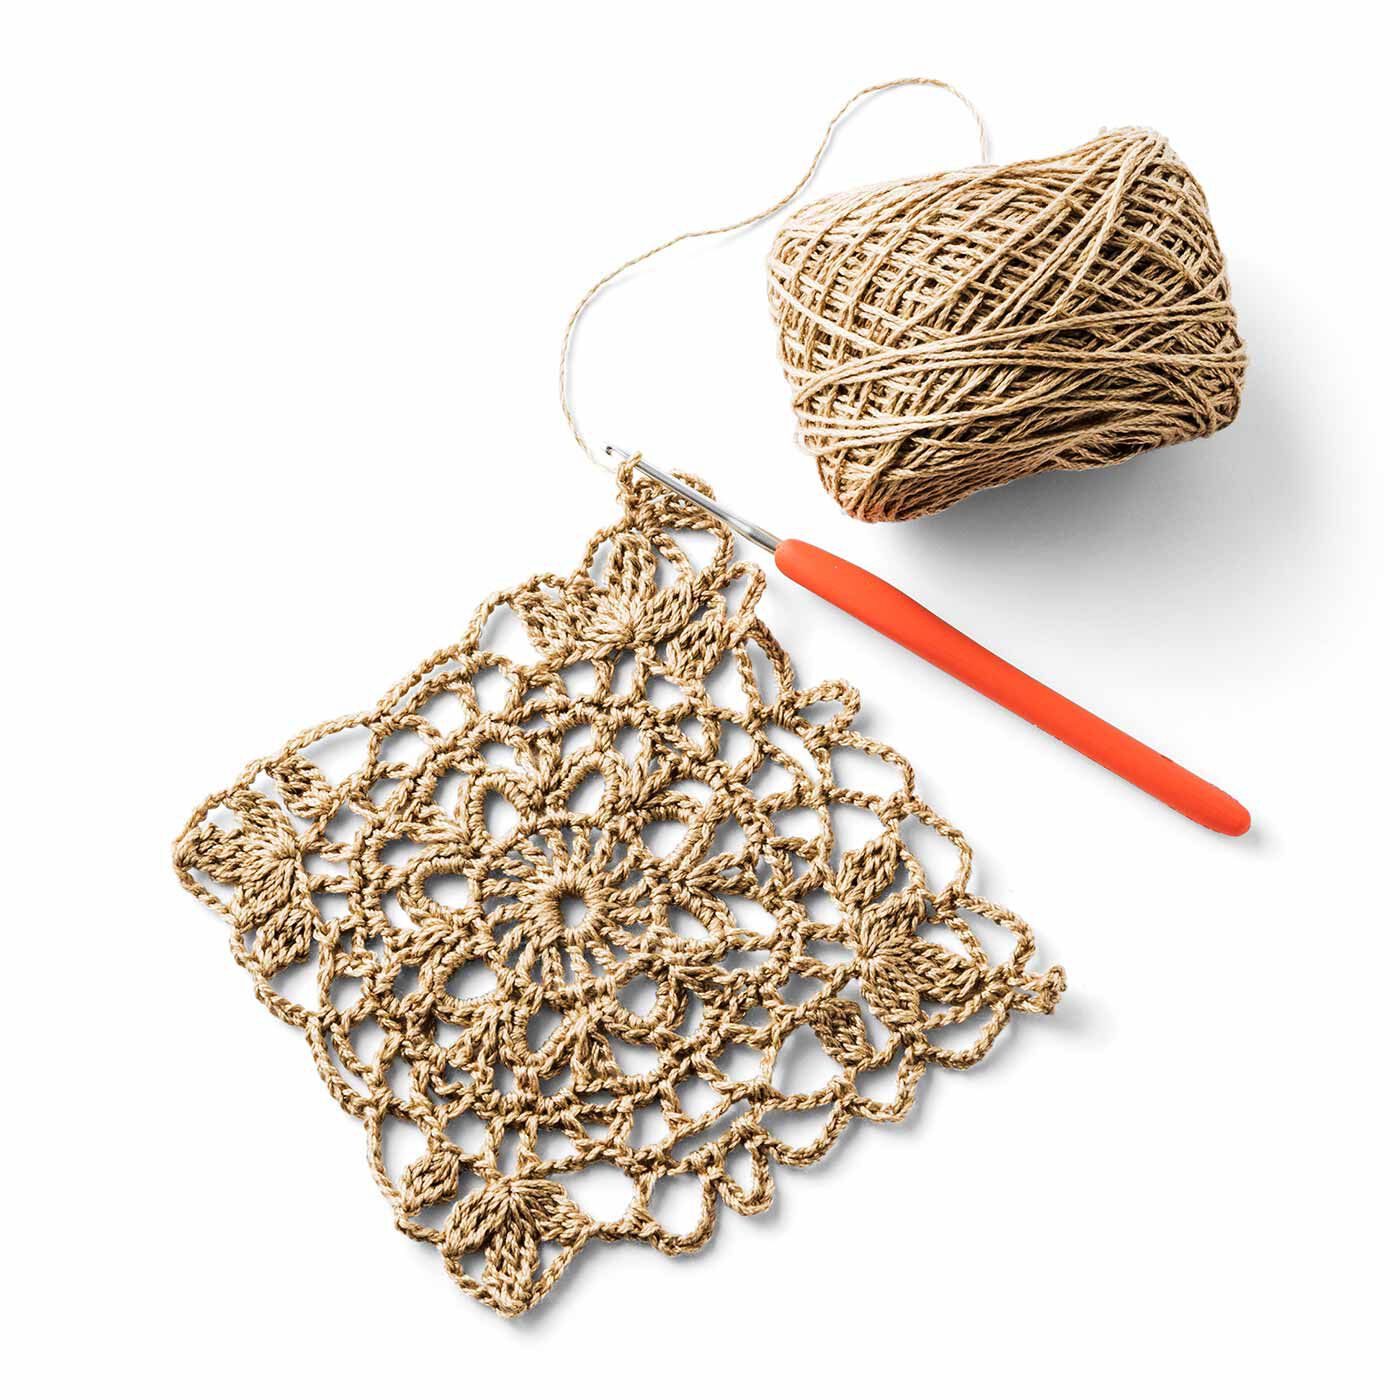 クチュリエ|リサイクルポリエステルの糸で編む 日常使いのかぎ針マルシェバッグの会